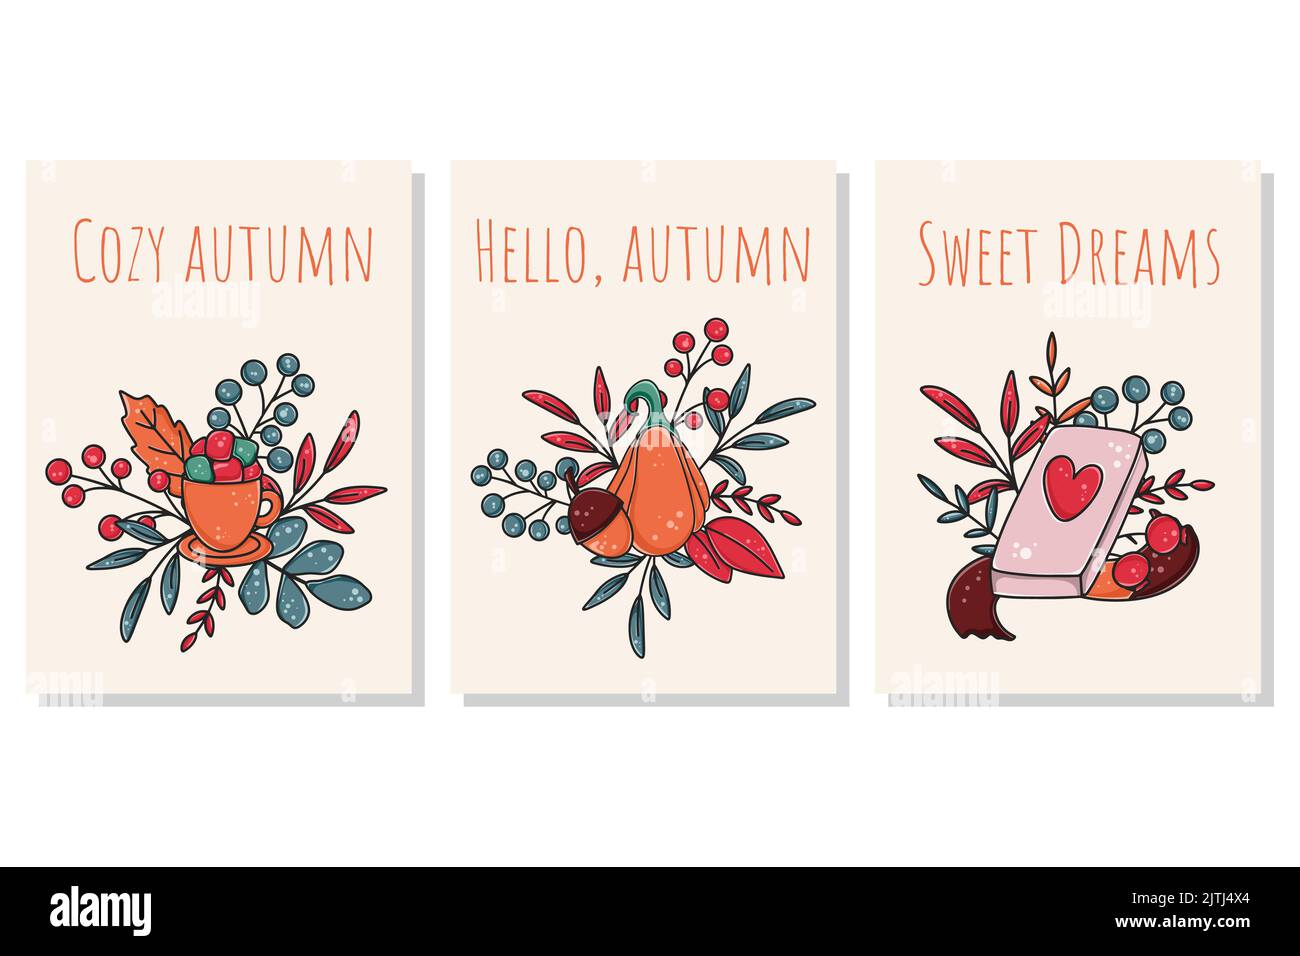 Set Herbstkarten mit Inschriften. Gemütlicher Herbst, süße Träume, hallo-Herbstschrift. Herbstpostkarten mit Laub, Kürbis, Beeren, Buch und Tee vec Stock Vektor